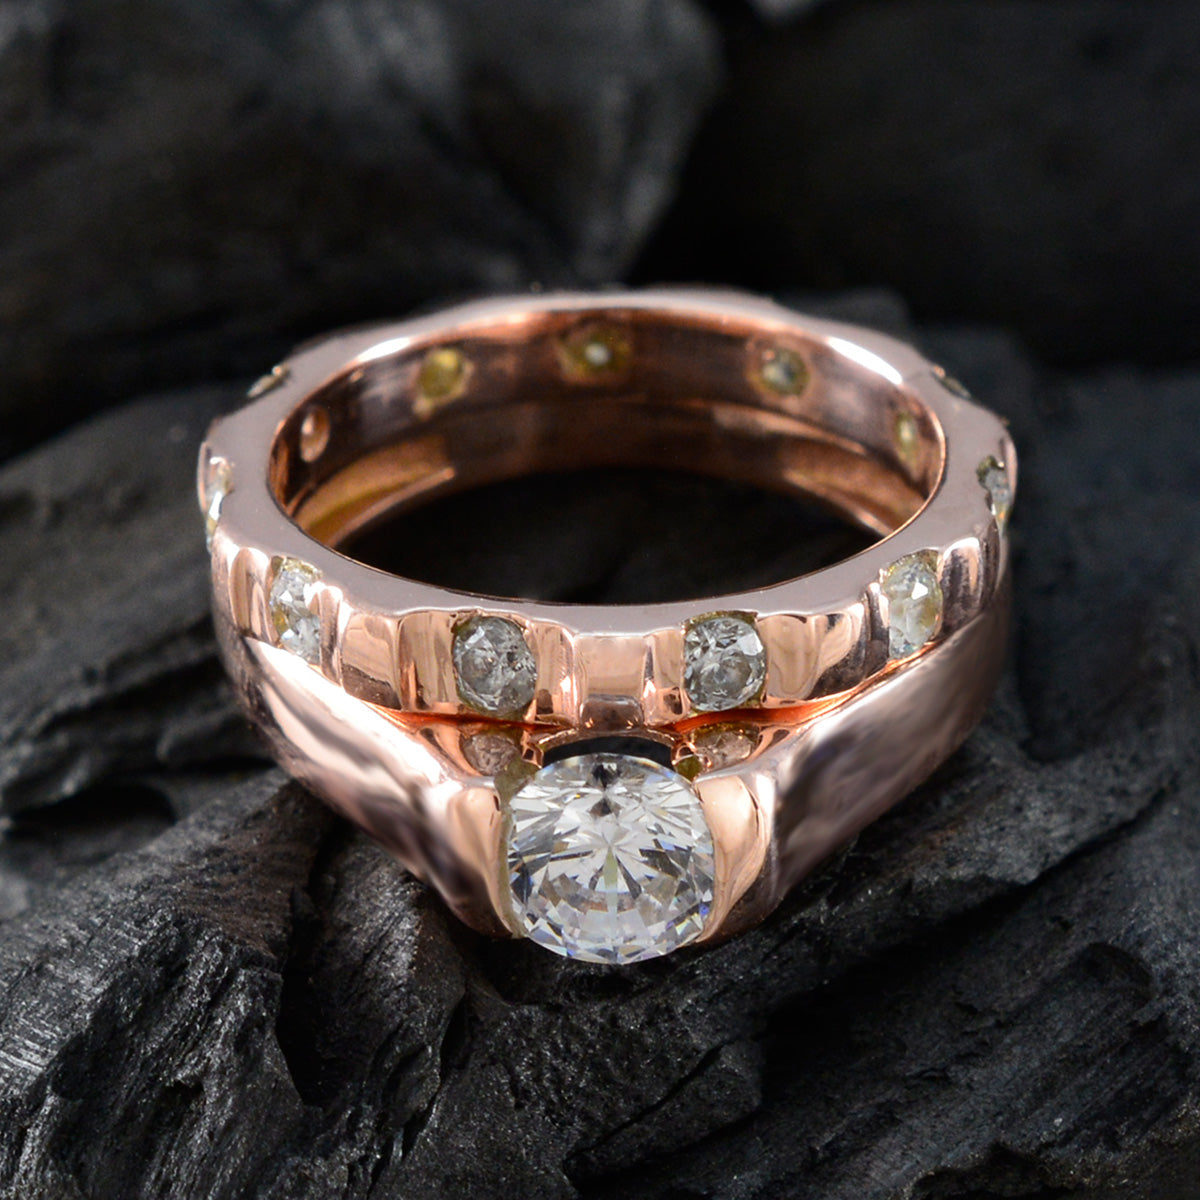 Серебряное кольцо riyo Perfect с покрытием из розового золота, белый камень cz, круглая форма, зубец, ювелирное кольцо, юбилейное кольцо